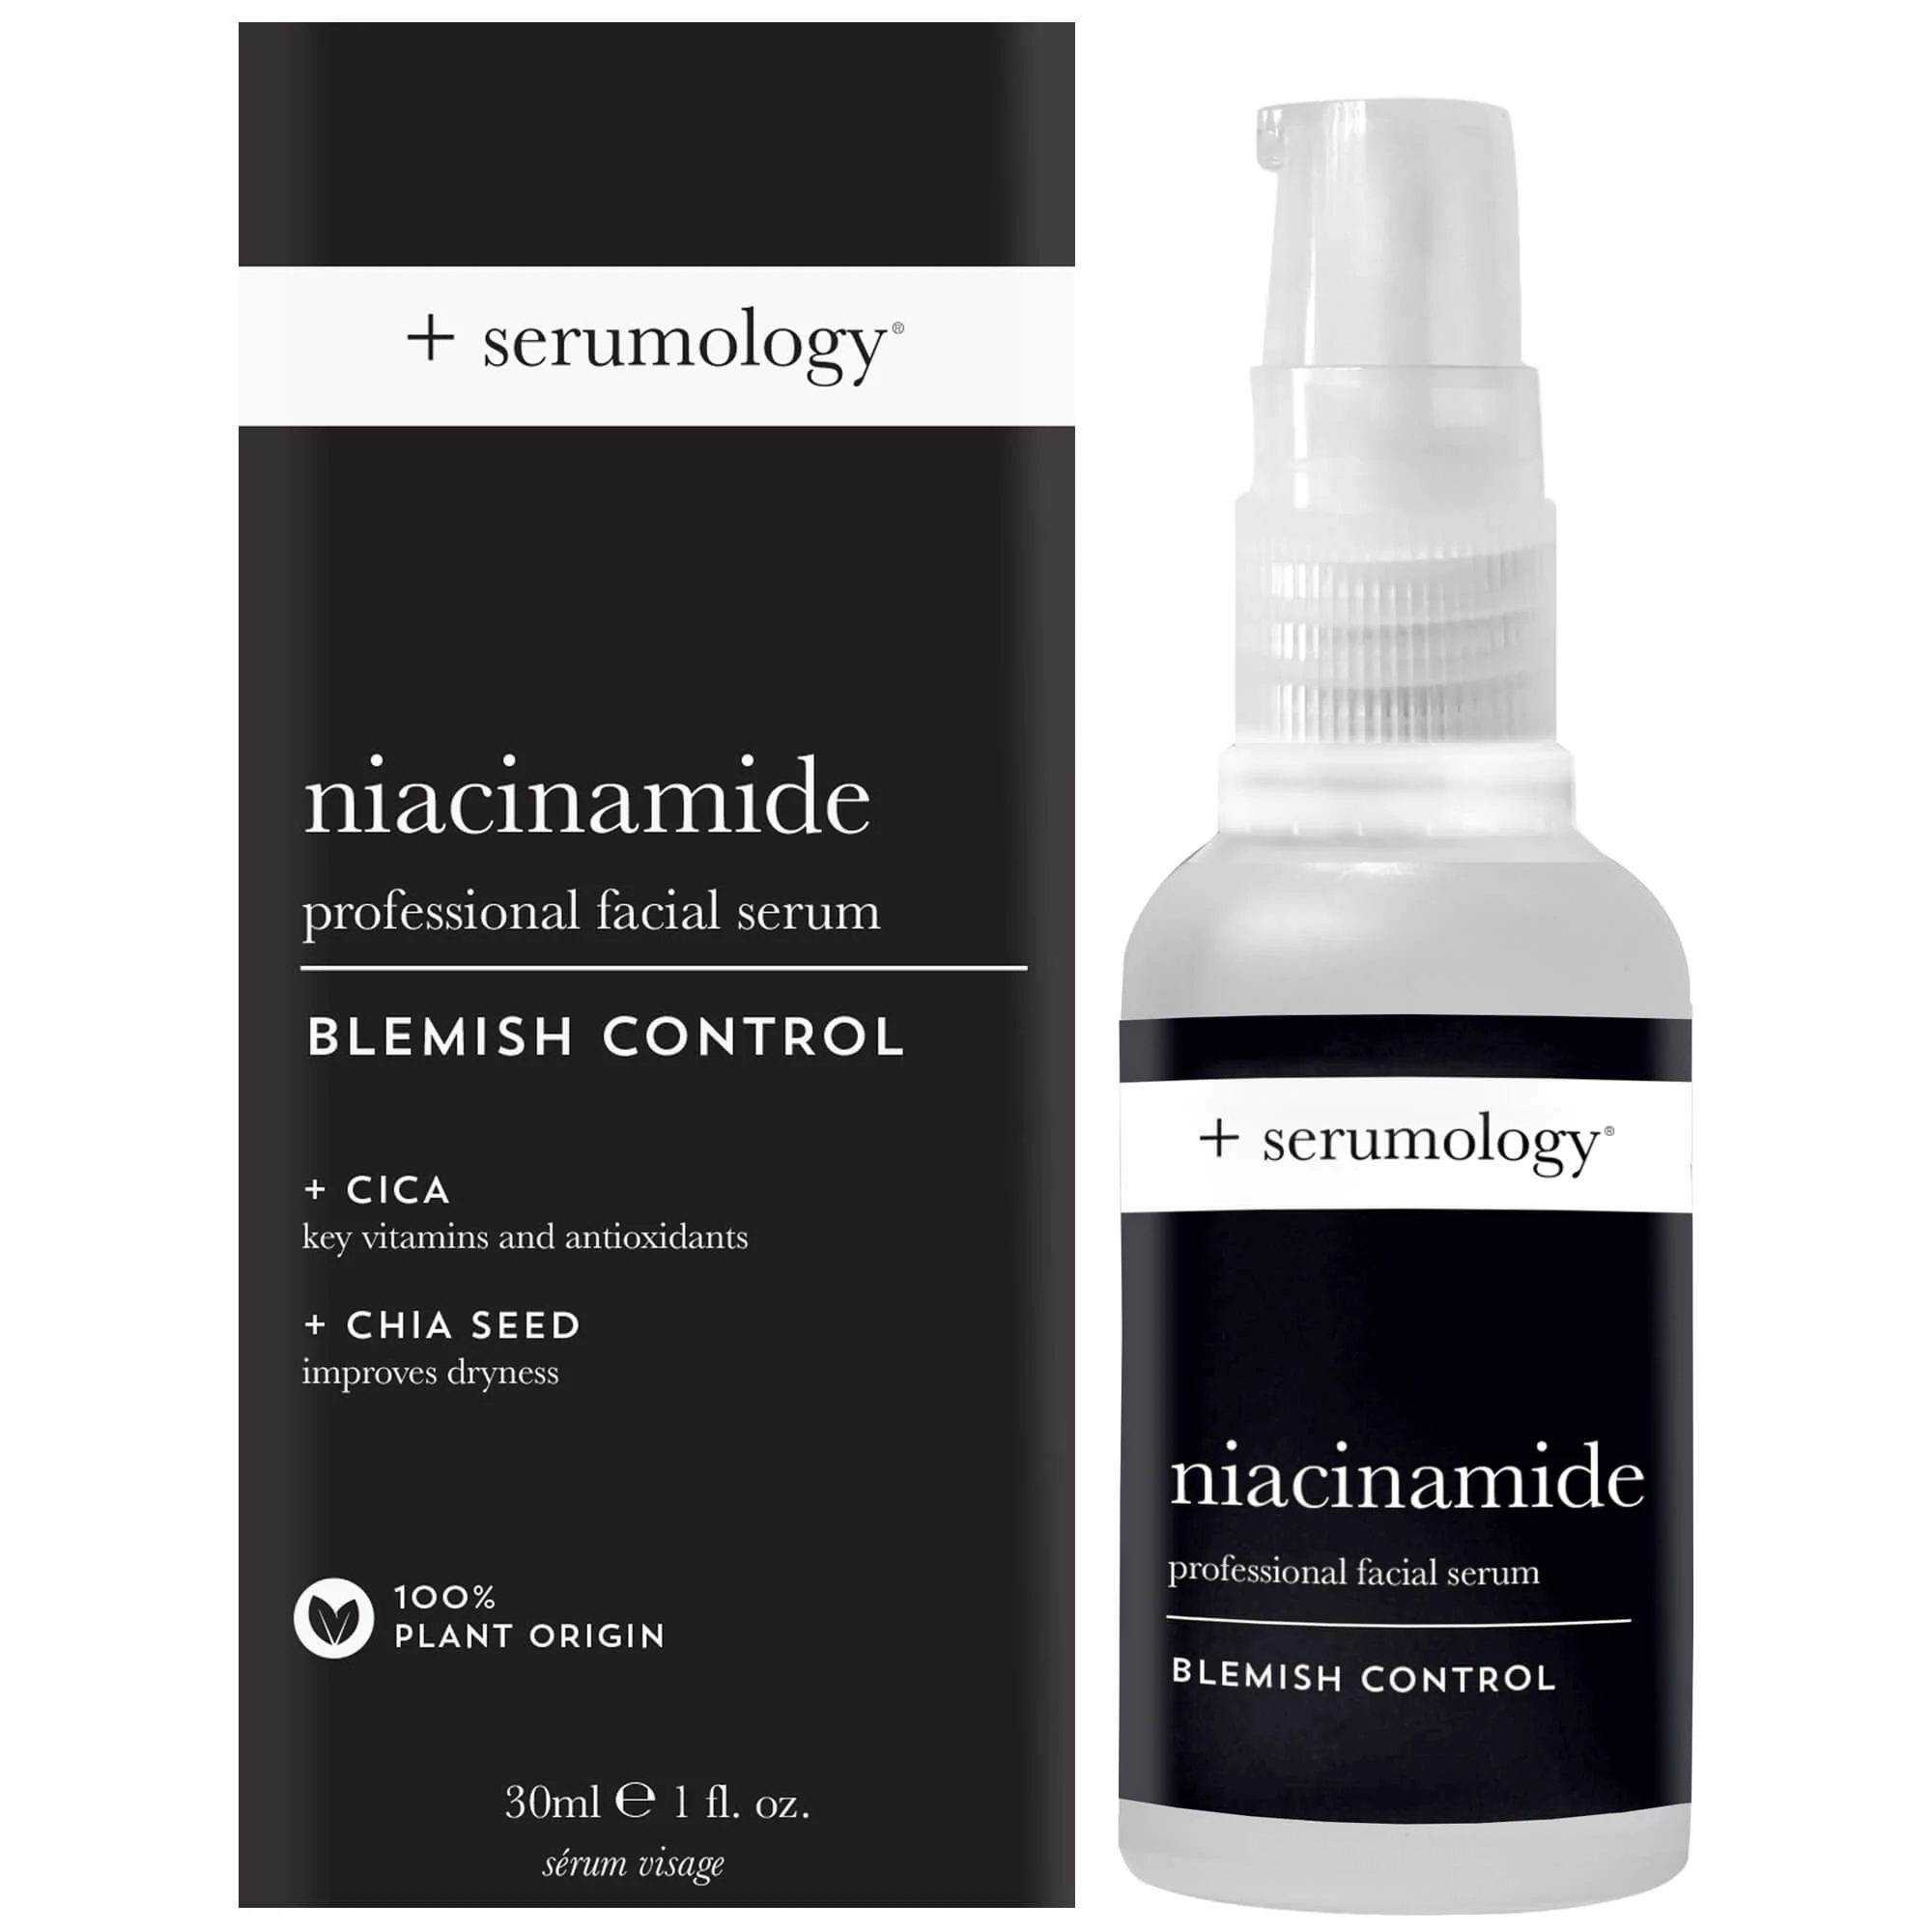 Serumology Niacinamide – Professional Facial Serum